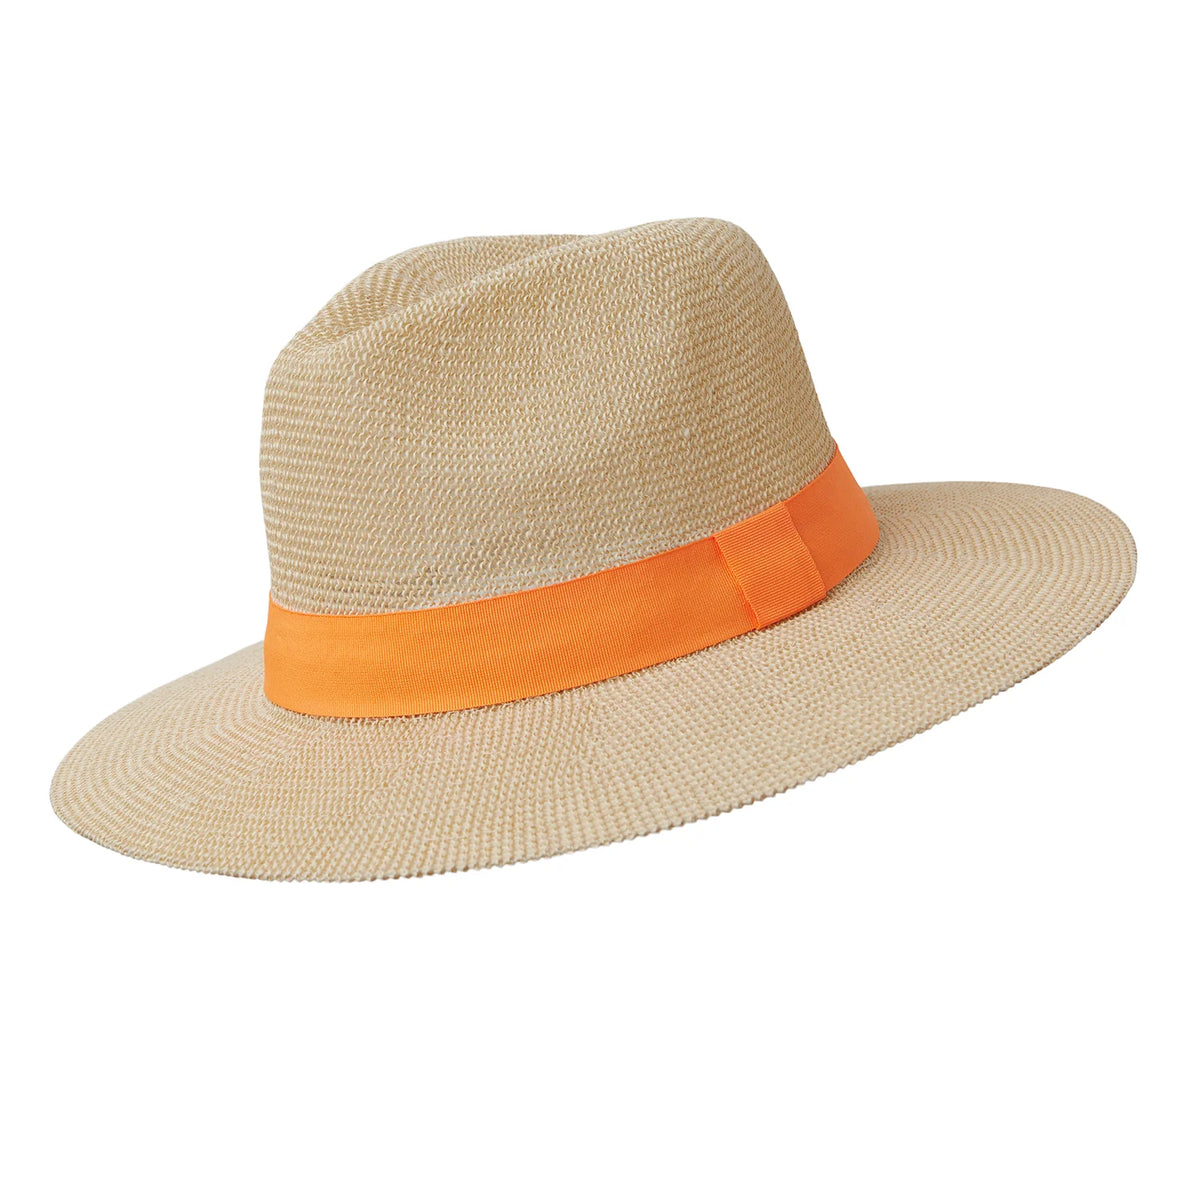 paper panama hat with orange ribbon detail